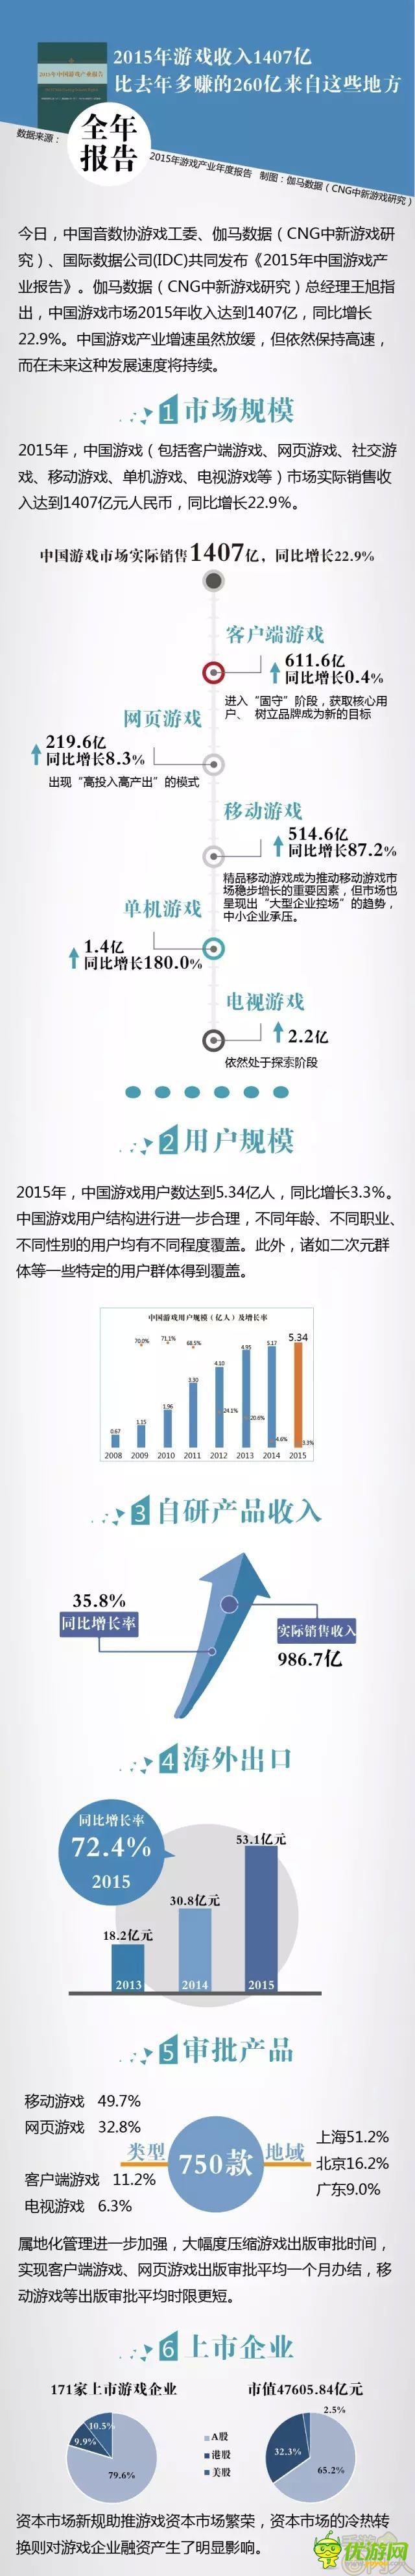 2015中国游戏收入1407亿 较去年增加260亿